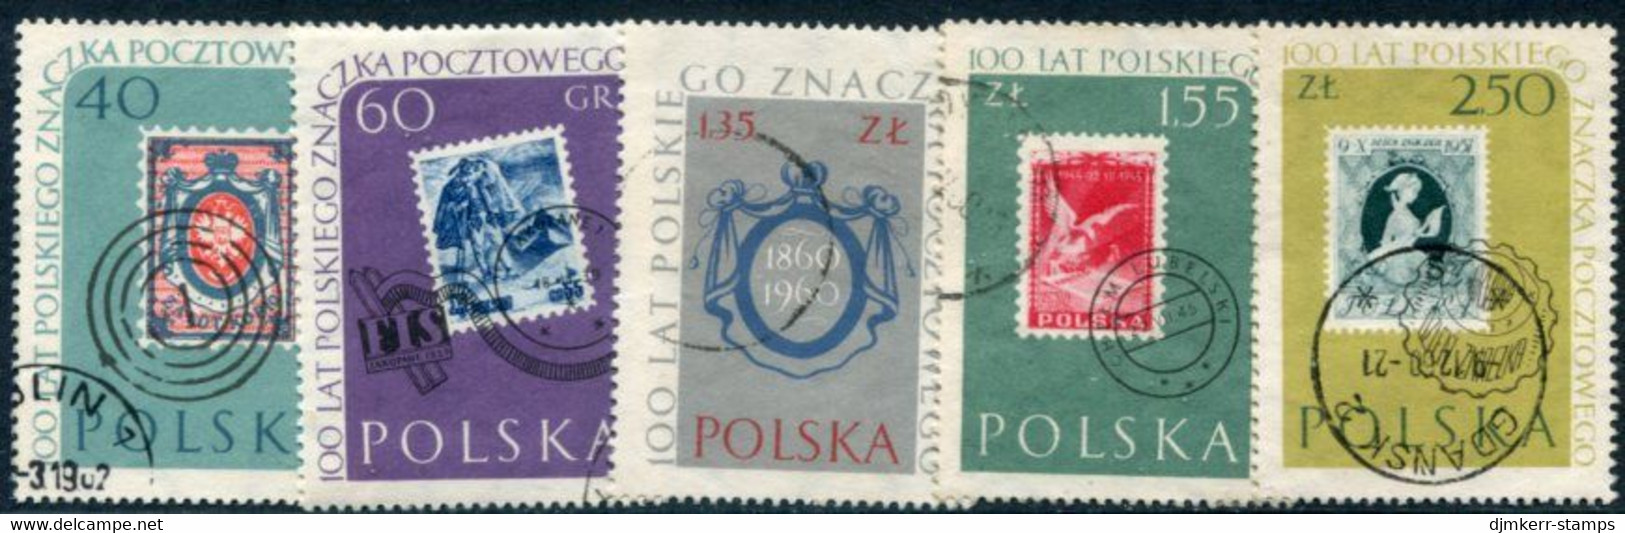 POLAND 1960 Stamp Centenary Set Used.  Michel 1151-55 - Usados